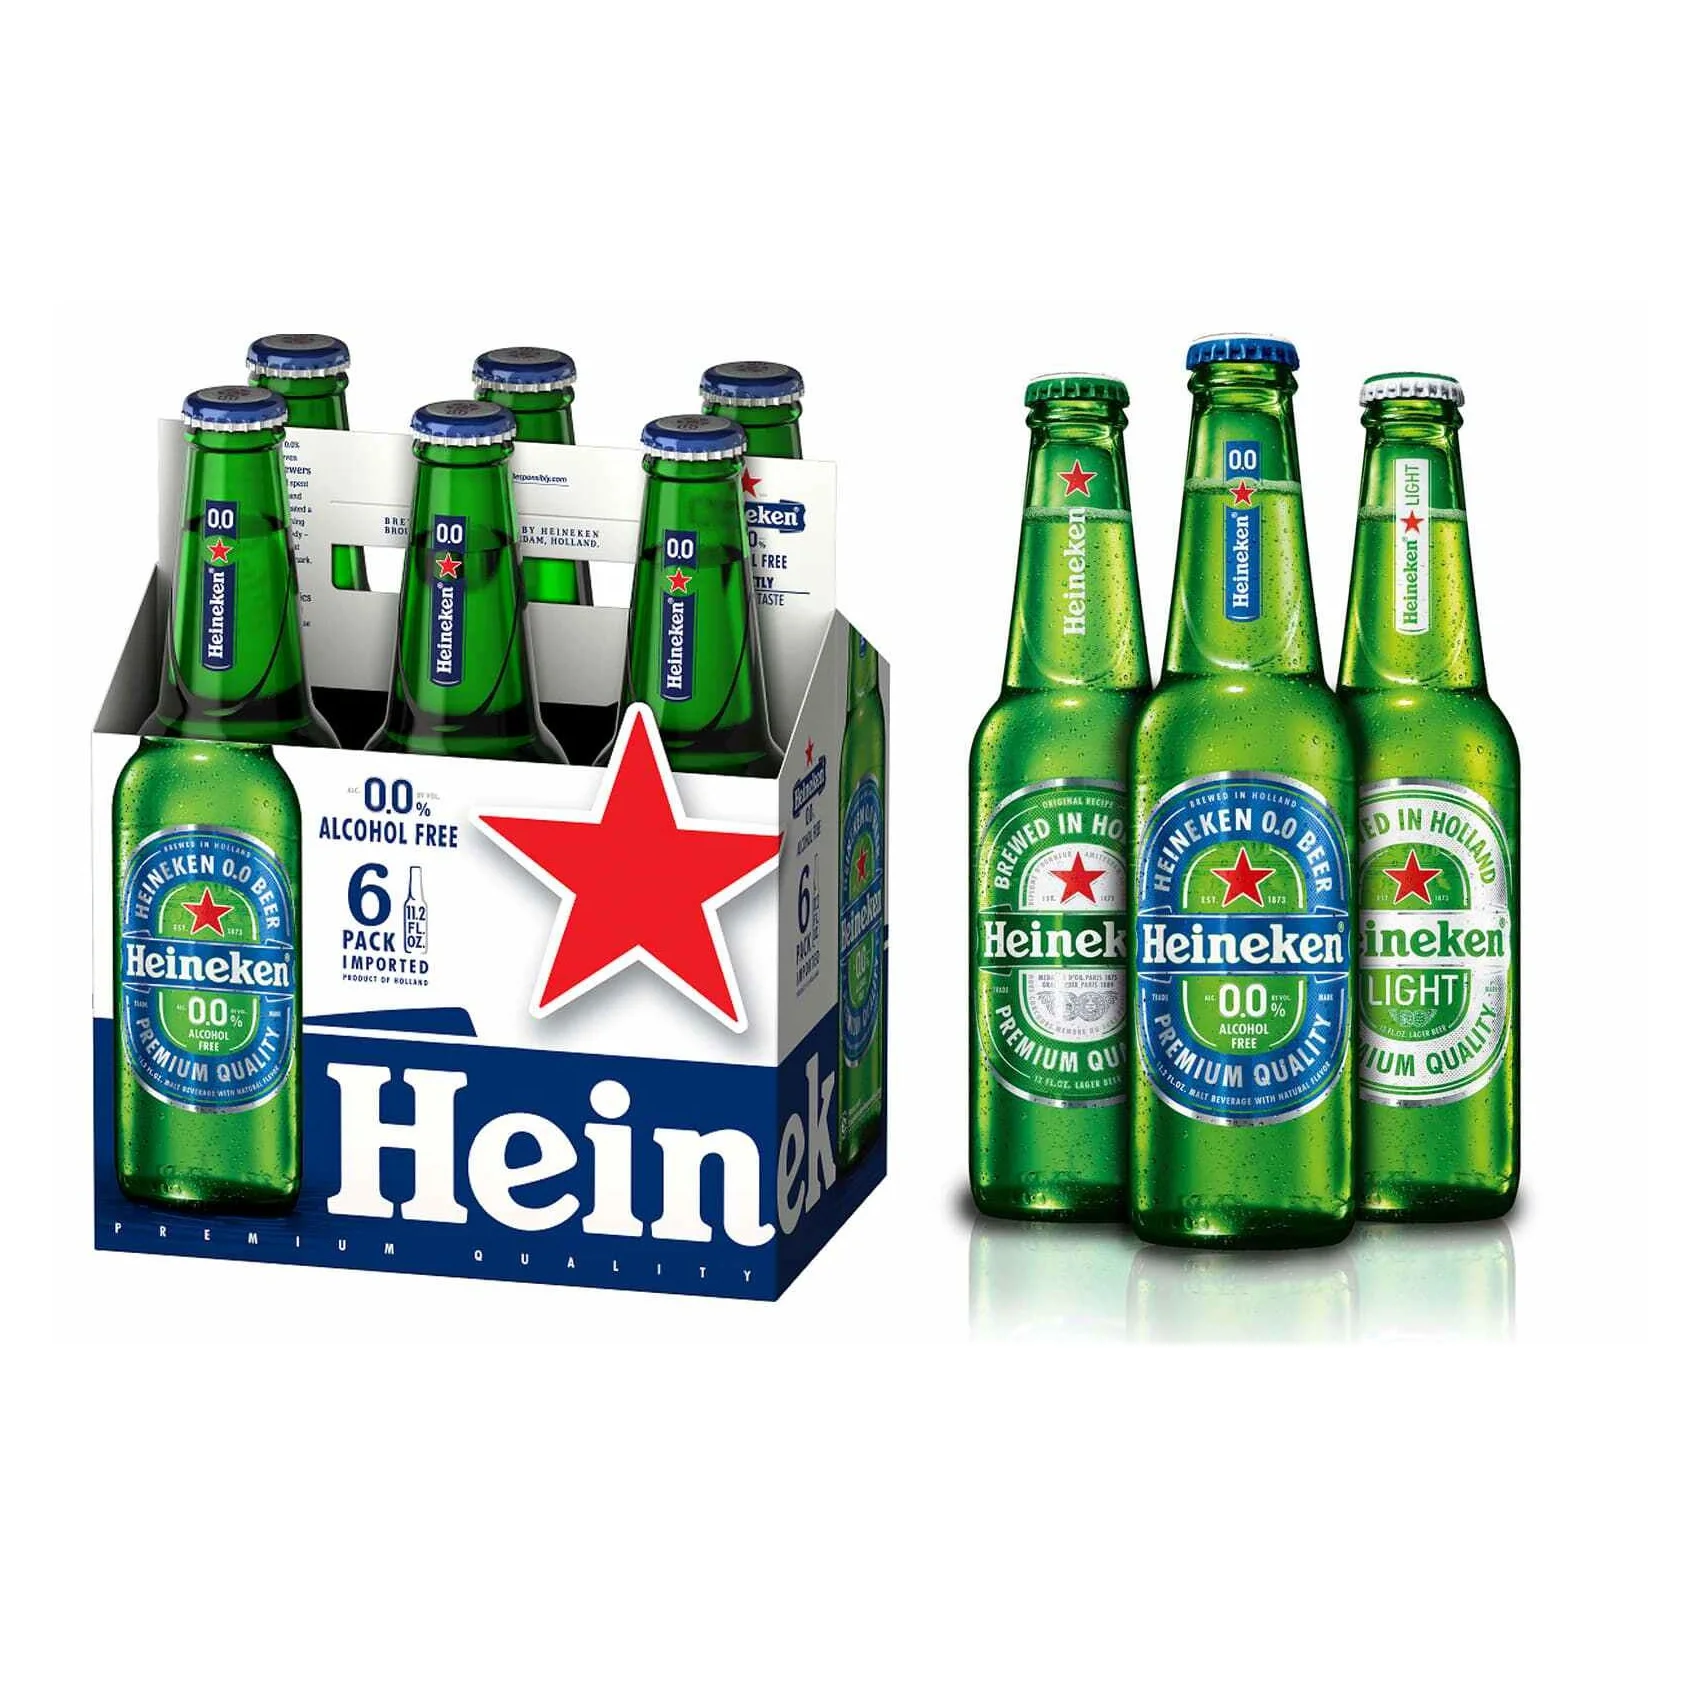 Bạn đang cần tìm kiếm bao bì chai bia và bia Heineken không cồn/ả Rập để kinh doanh? Đừng khó chịu vì chúng tôi có tất cả những sản phẩm đáp ứng nhu cầu của bạn. Đặt hàng ngay để được giá tốt nhất!